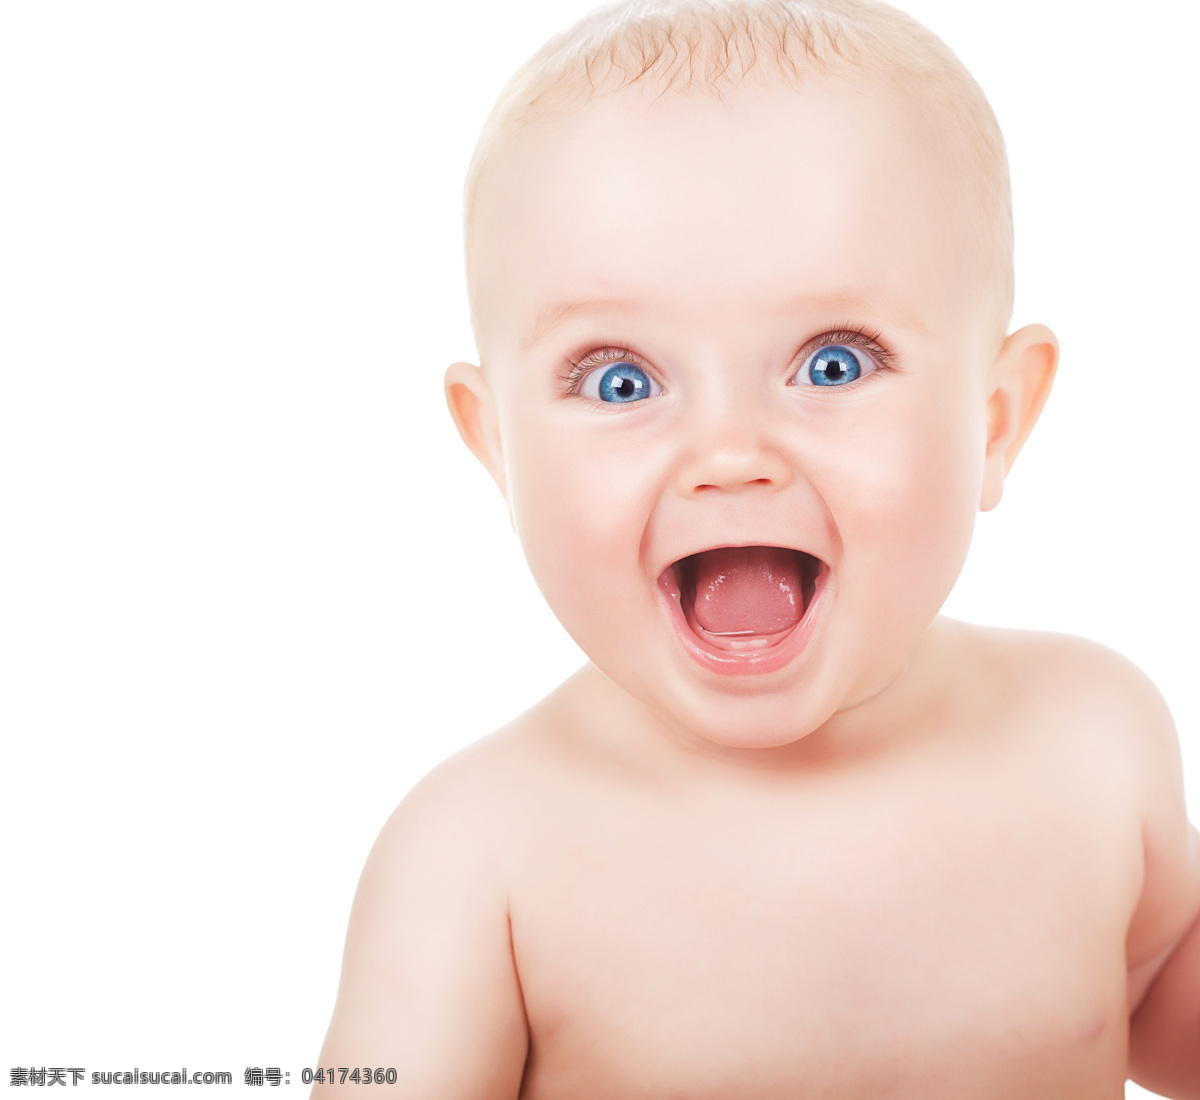 蓝 眼睛 张大 嘴巴 开心 微笑 宝宝 婴幼儿 外国婴幼儿 男宝宝 蓝眼睛 大眼睛 健康 可爱 漂亮 笑容 专题 写真 宝宝图片 人物图片